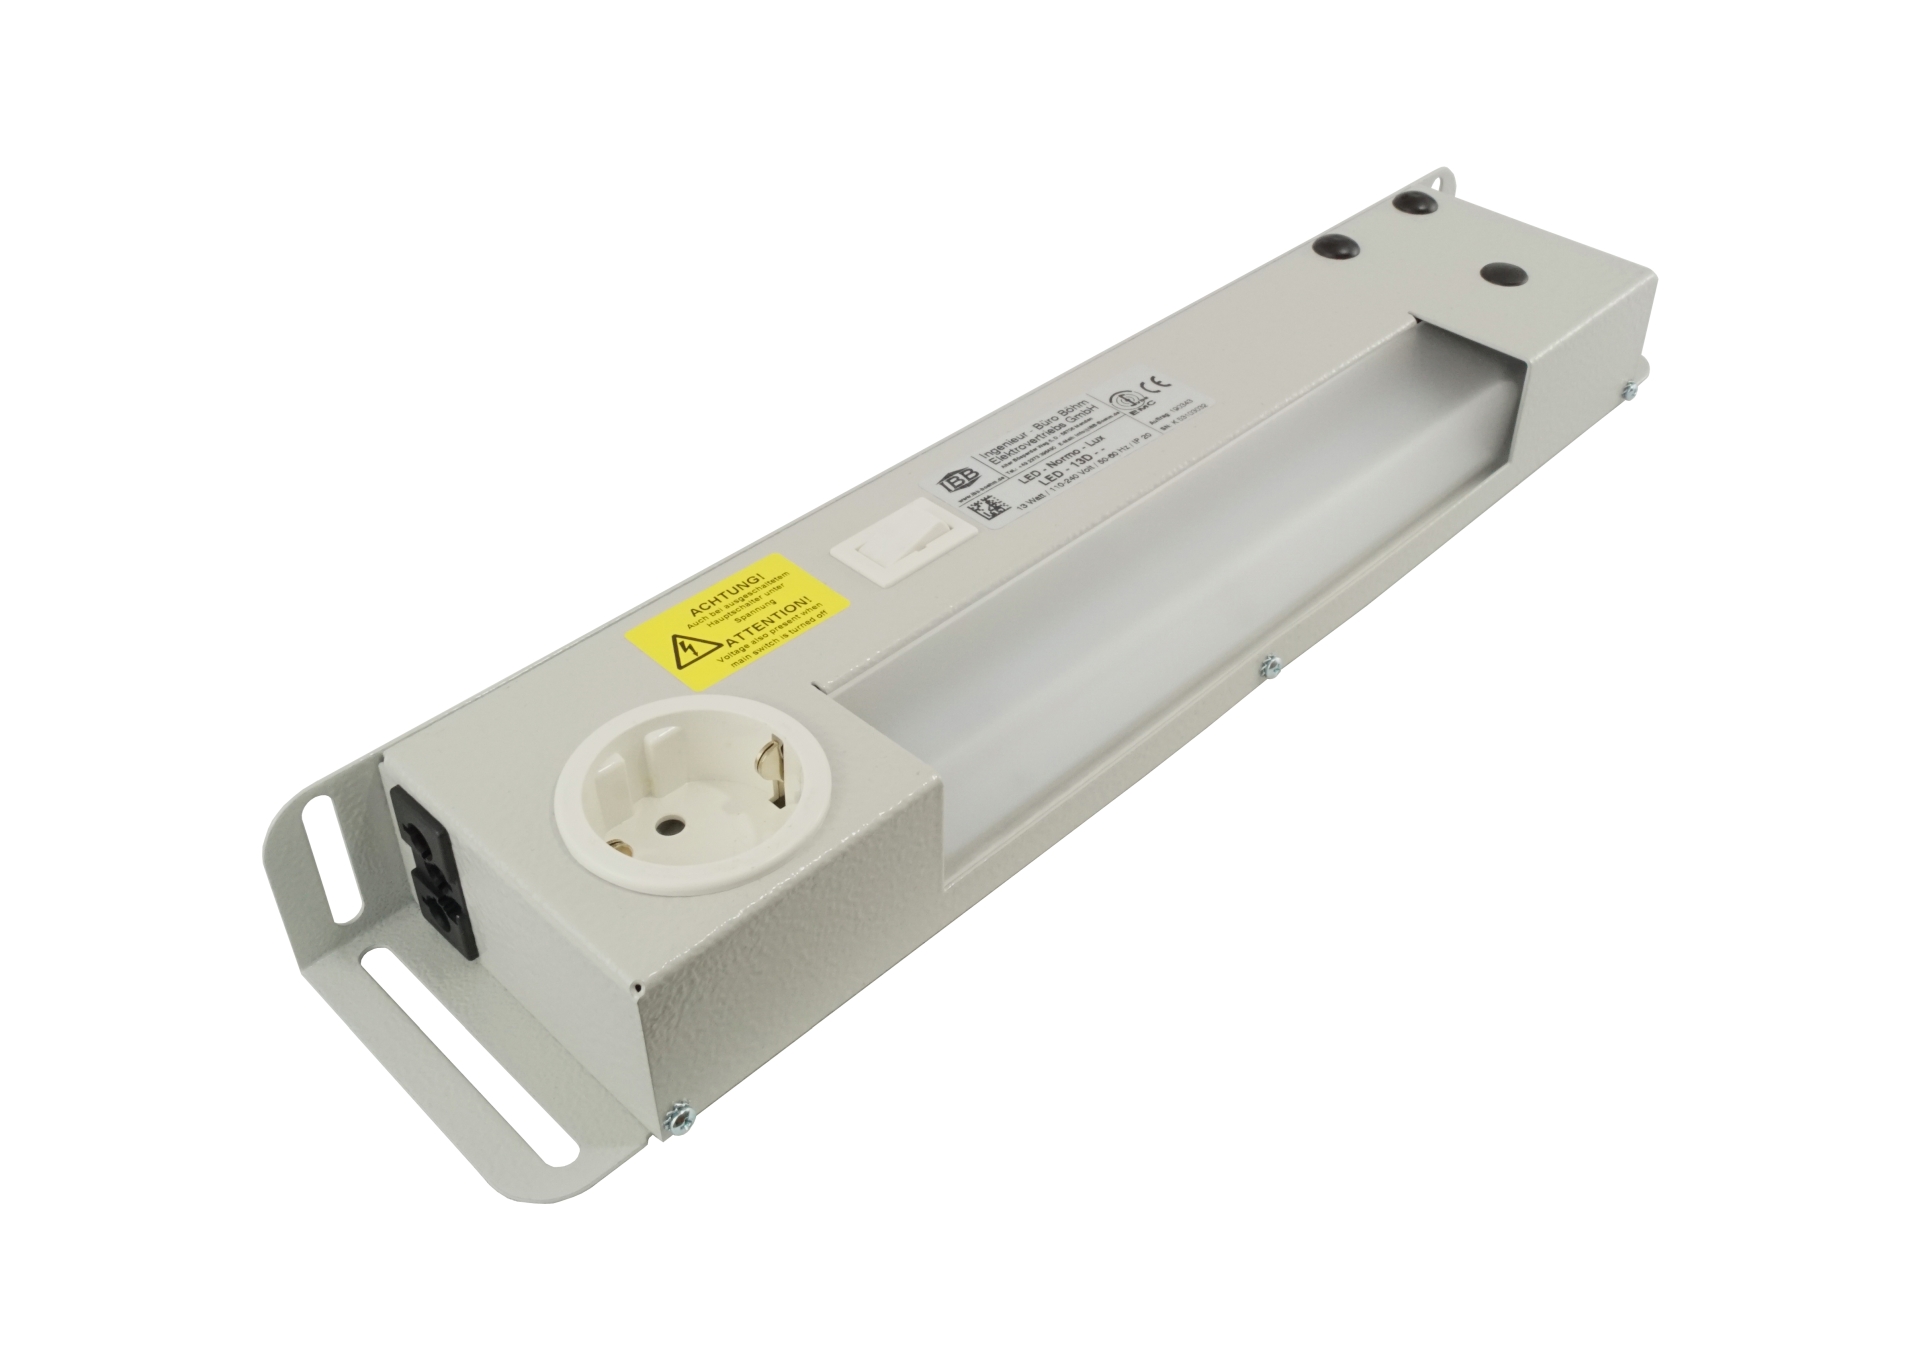 Abbildung LED Schaltschrankleuchte LED-Normo-Lux 13 Watt | Betriebsspannung: 110-240 Volt, 50-60 Hz, Ein-/ Ausschalter